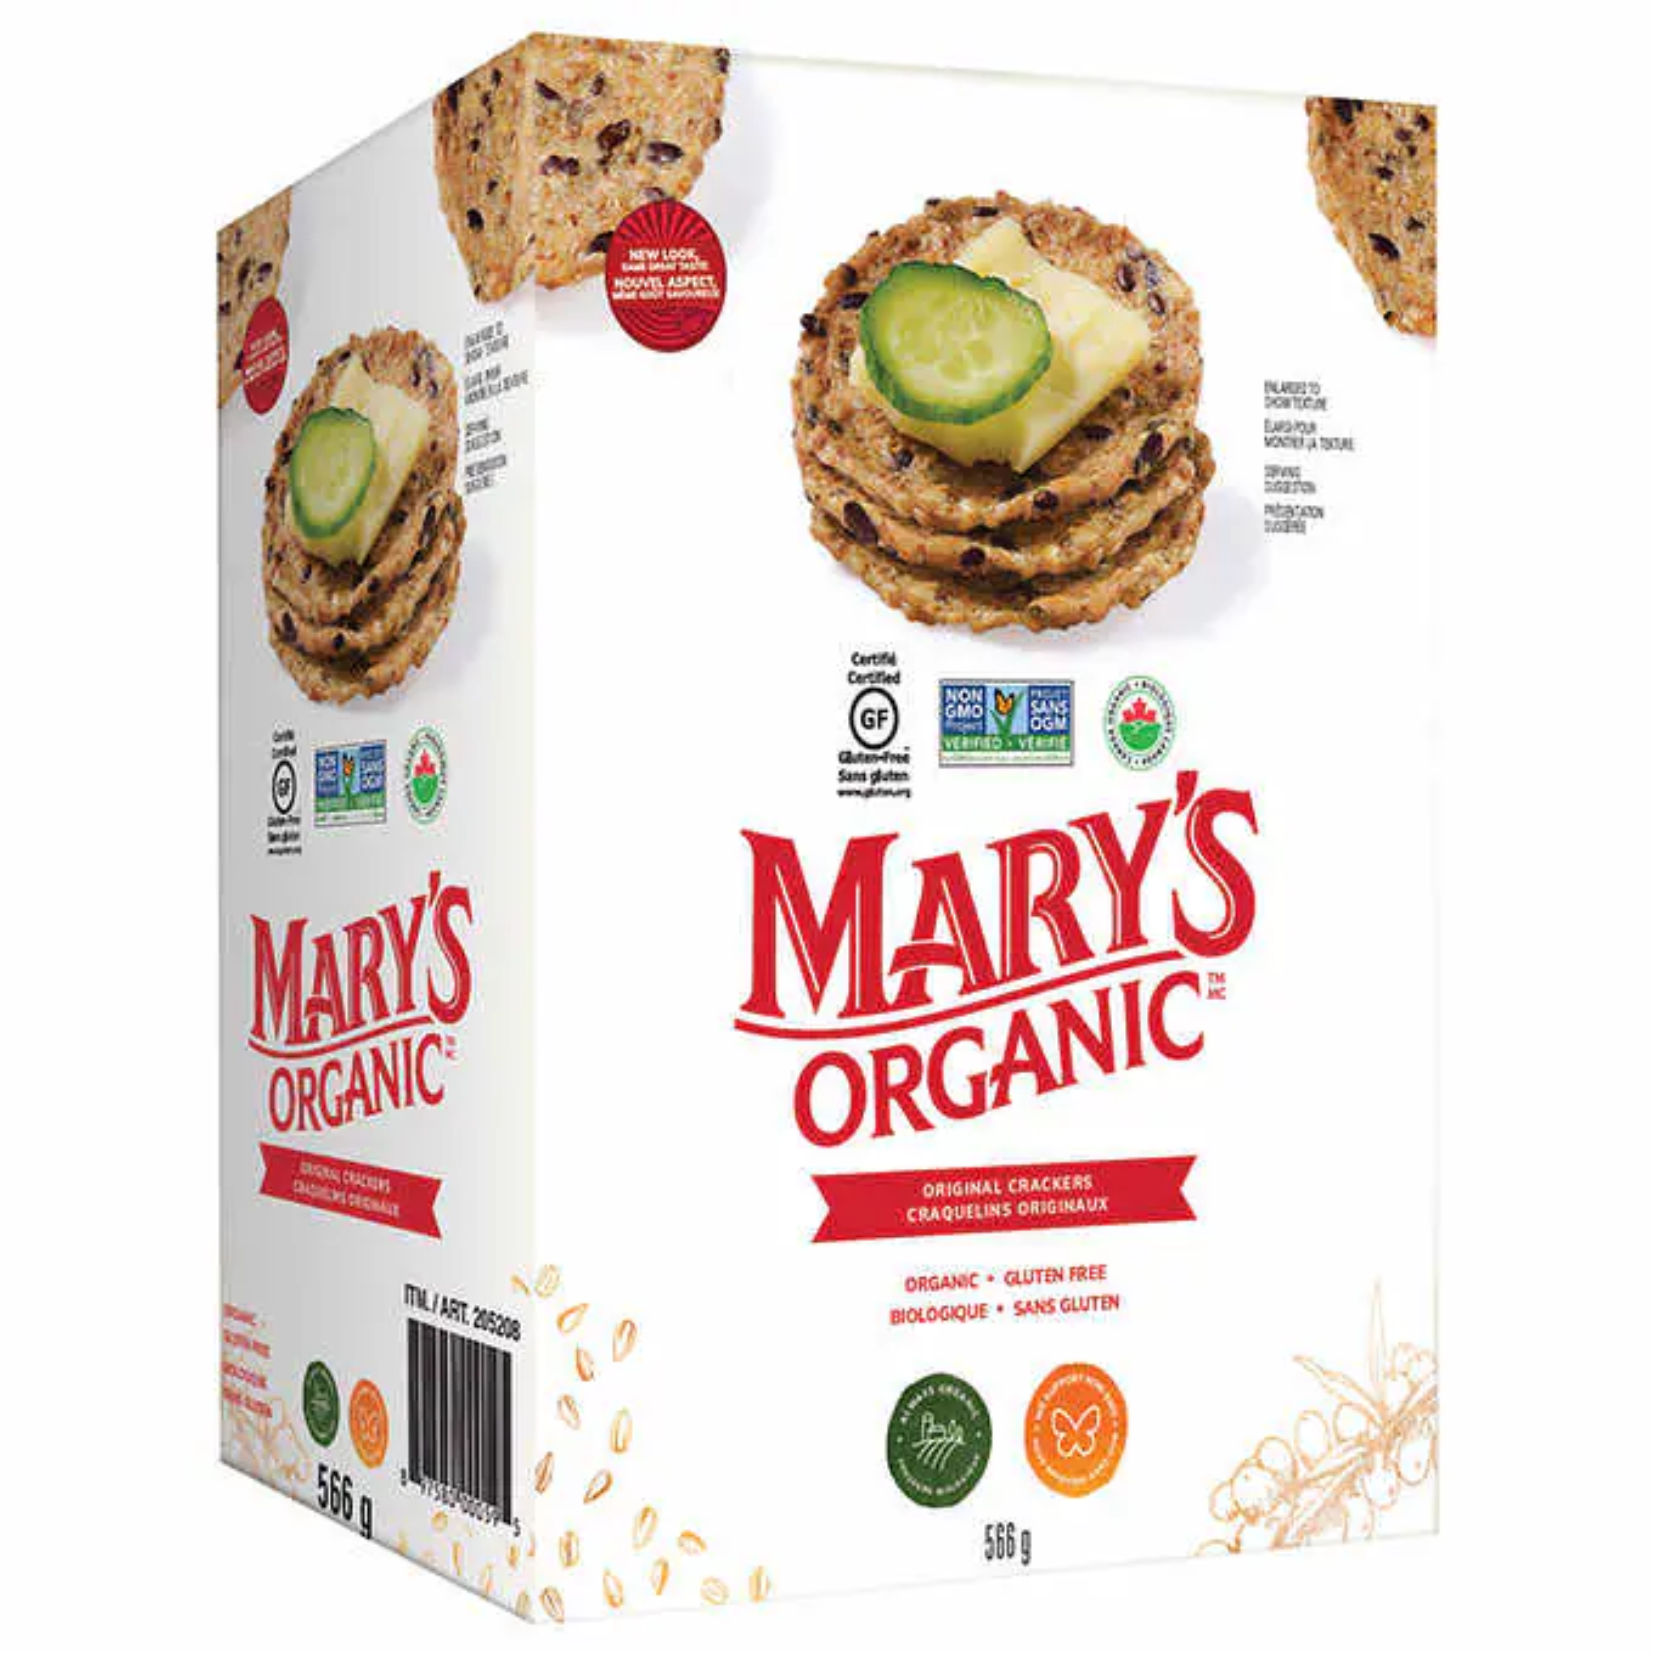 Mary's Organic Original Crackers 566g